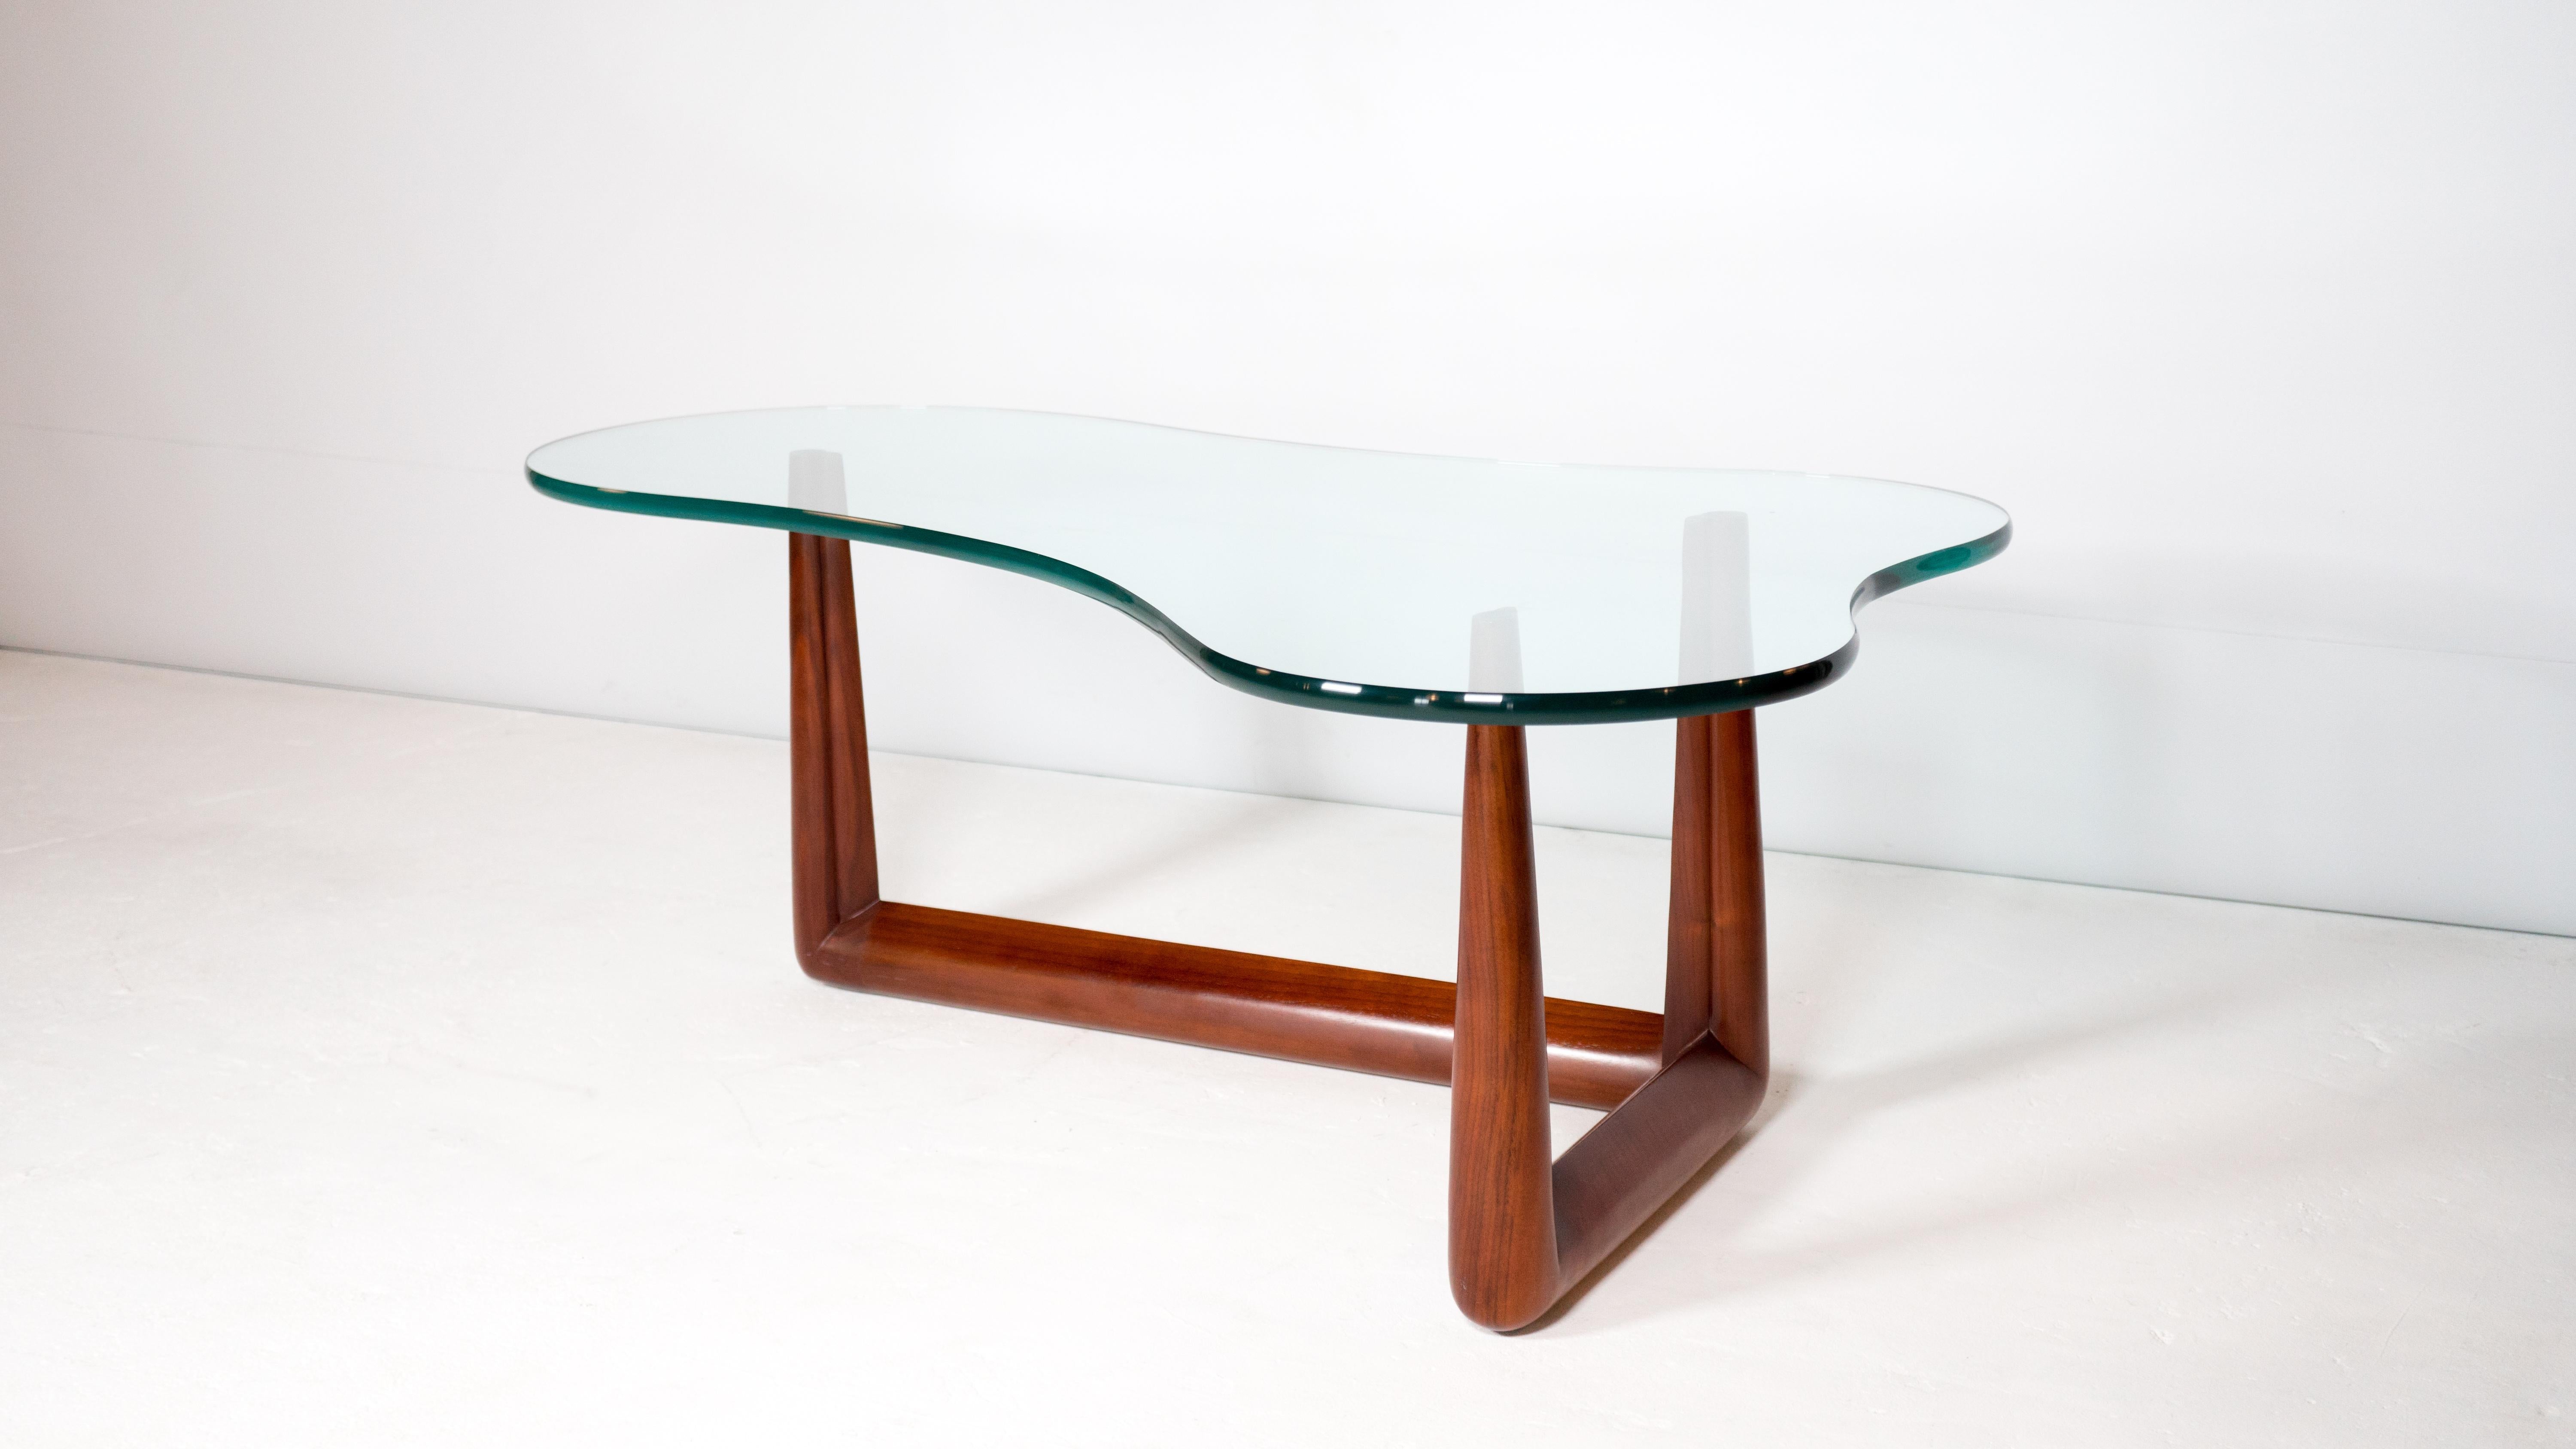 T.H. Robsjohn-Gibbings pour la table basse biomorphique Widdicomb. Base sculpturale en noyer massif présentant un magnifique grain de bois et un verre épais de 0,75